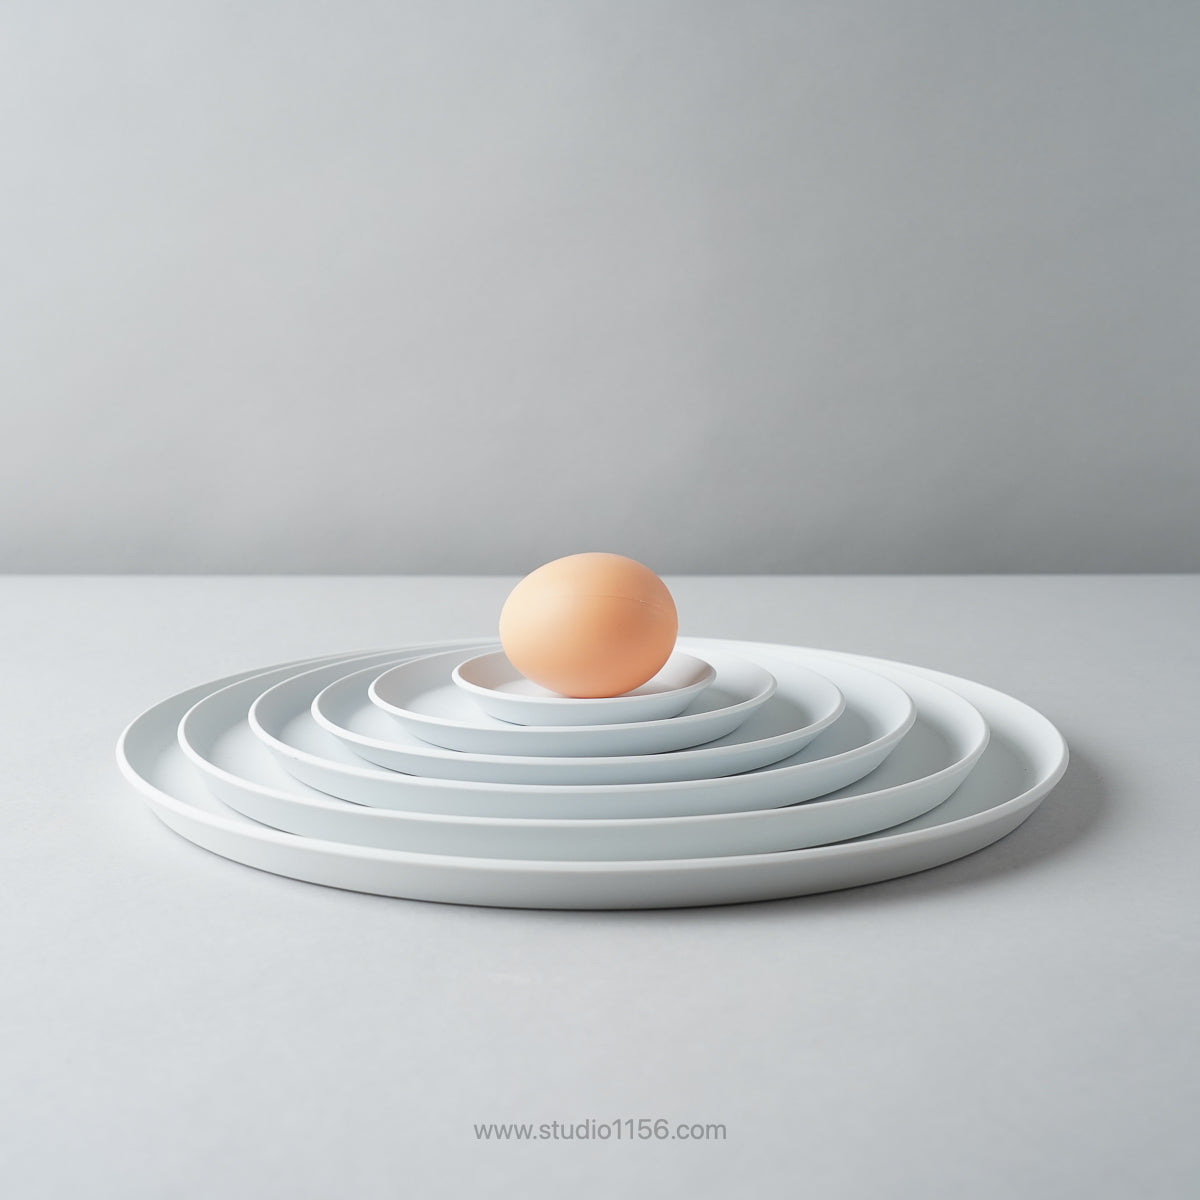 有田焼 ラウンドプレート グレー / TY Round Plate Plain Gray 1616 / Arita Japan Studio1156